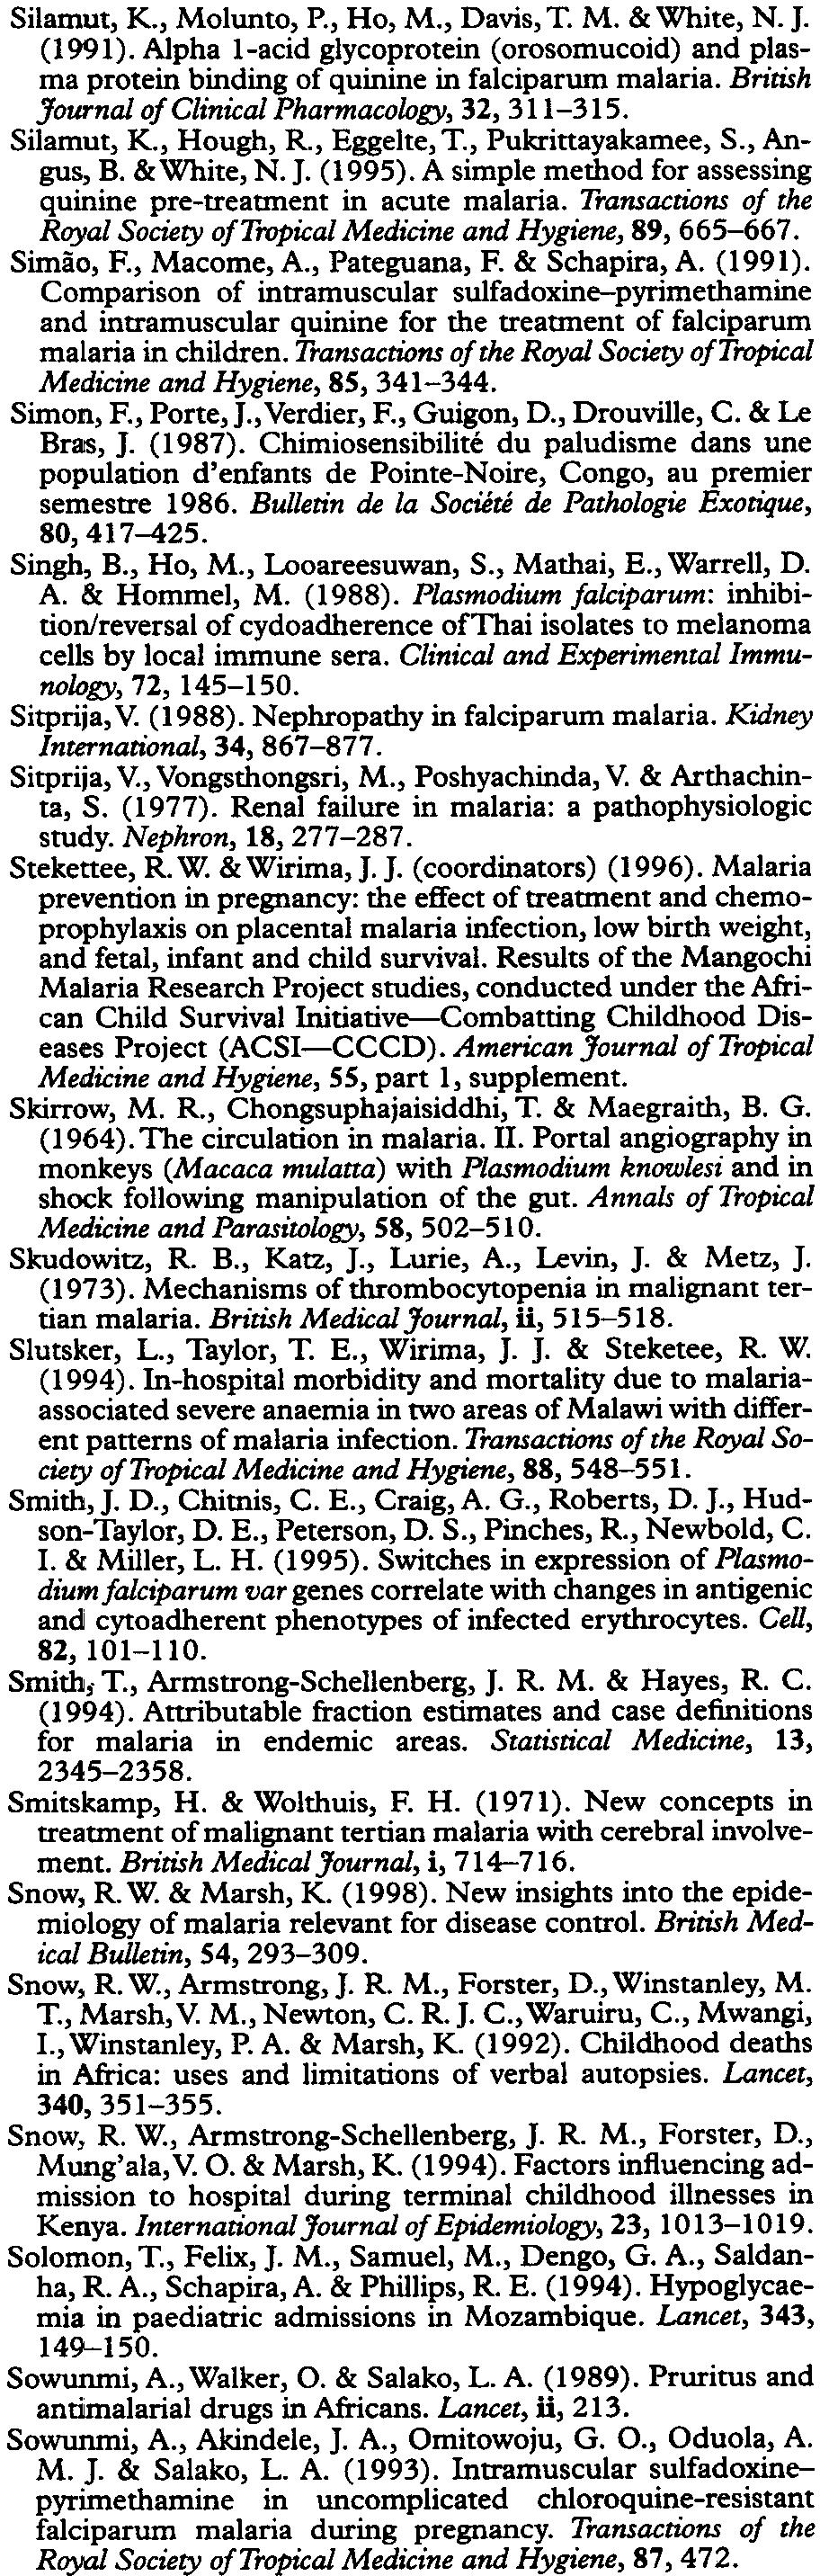 , Steketee, R. W., Chitsulo, L., Macheso, A., Kazembe, P. & Wirima, I. I. (1996).